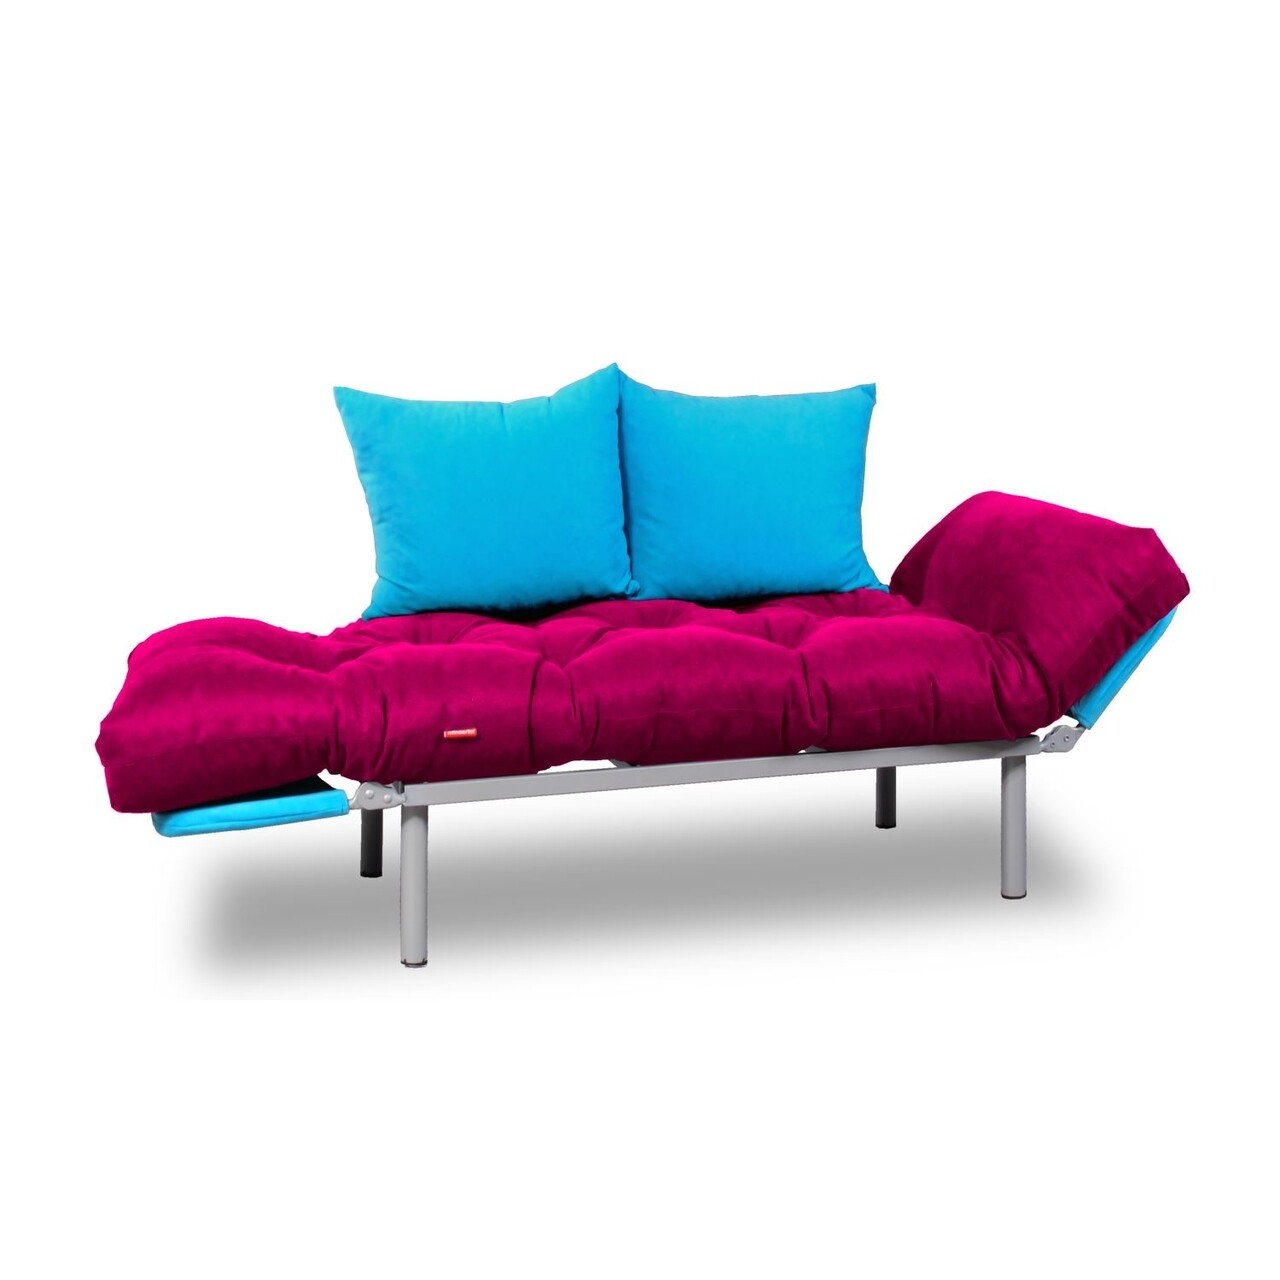 Canapea Extensibila Gauge Concept, Pink Turquoise, 2 Locuri, 190x70 Cm, Fier/poliester